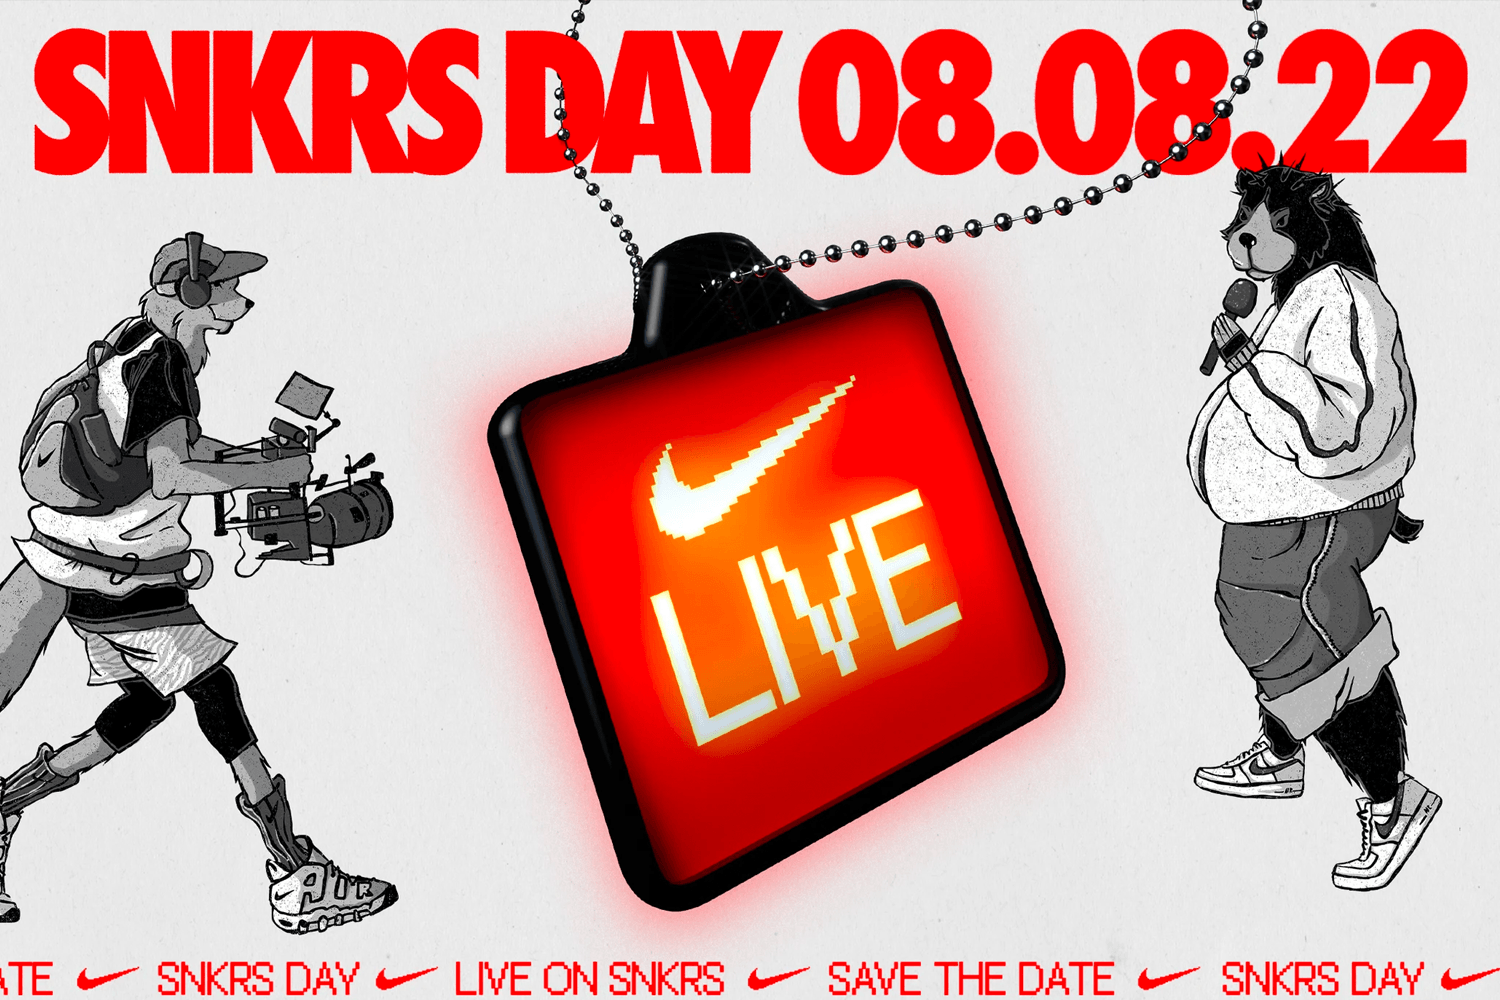 De derde sneaker release Nike SNKRS Day is bekend